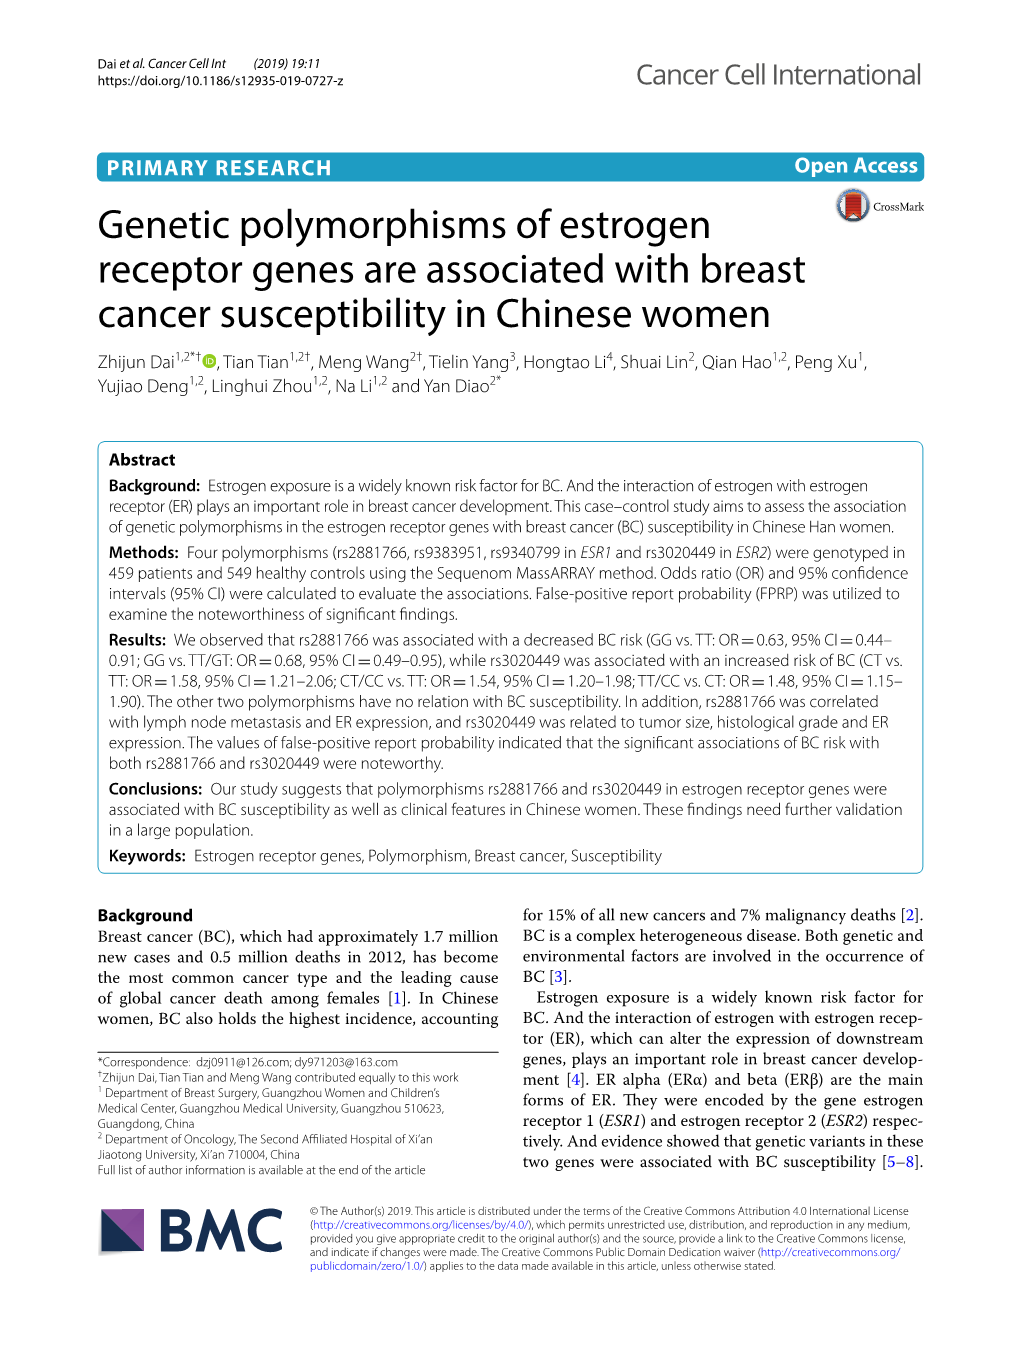 Genetic Polymorphisms of Estrogen Receptor Genes Are Associated With